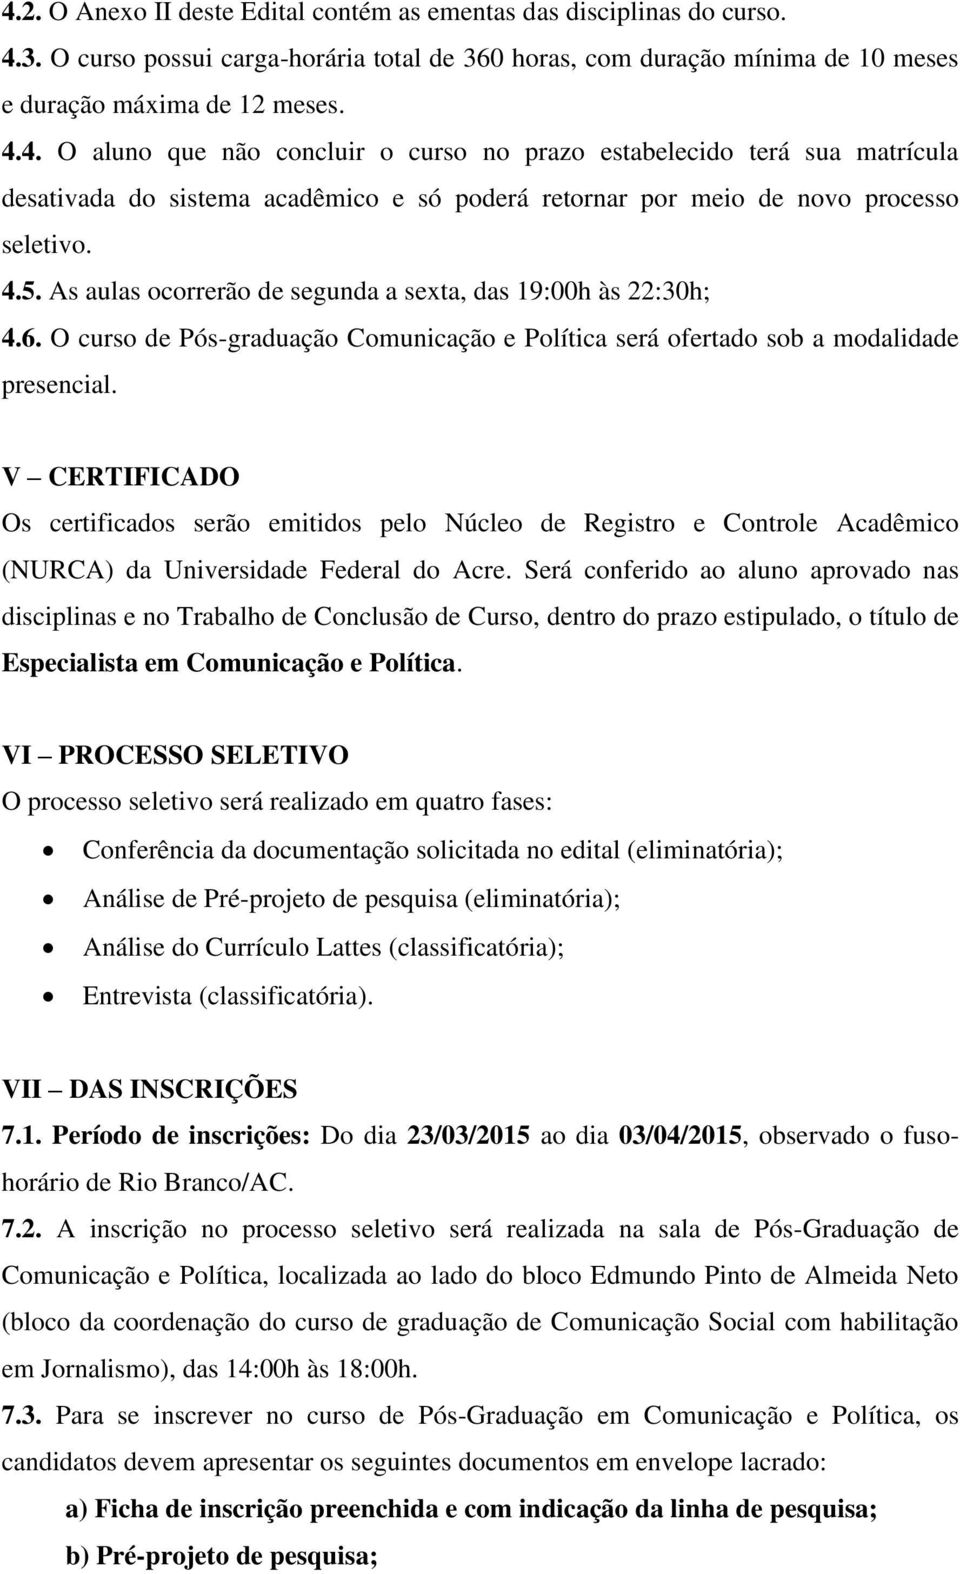 V CERTIFICADO Os certificados serão emitidos pelo Núcleo de Registro e Controle Acadêmico (NURCA) da Universidade Federal do Acre.